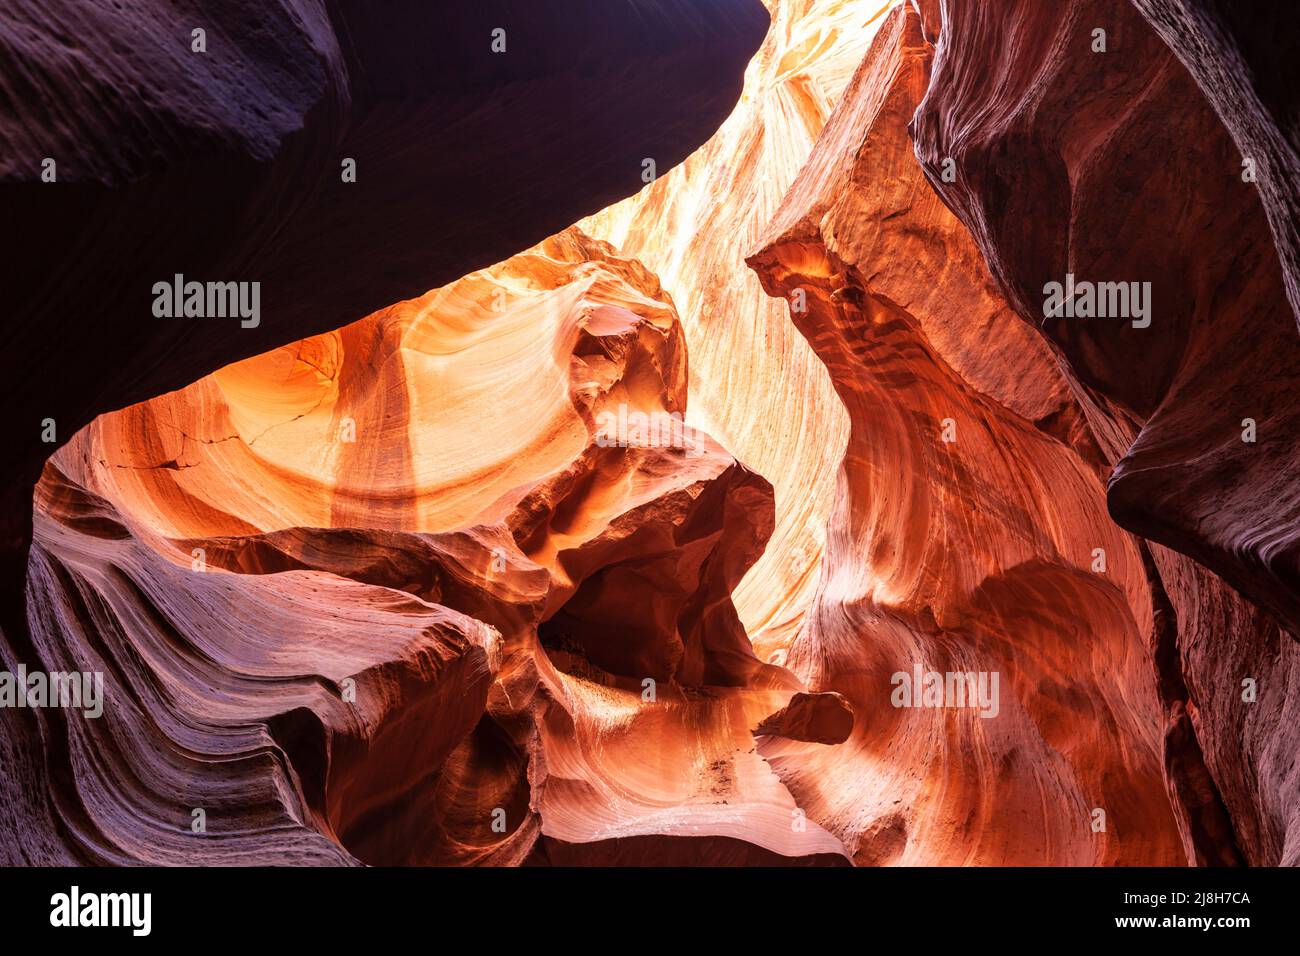 Paysage dans un canyon de fente avec des murs de roche ondulés et lisses, Canyon X, Arizona, les États-Unis Banque D'Images